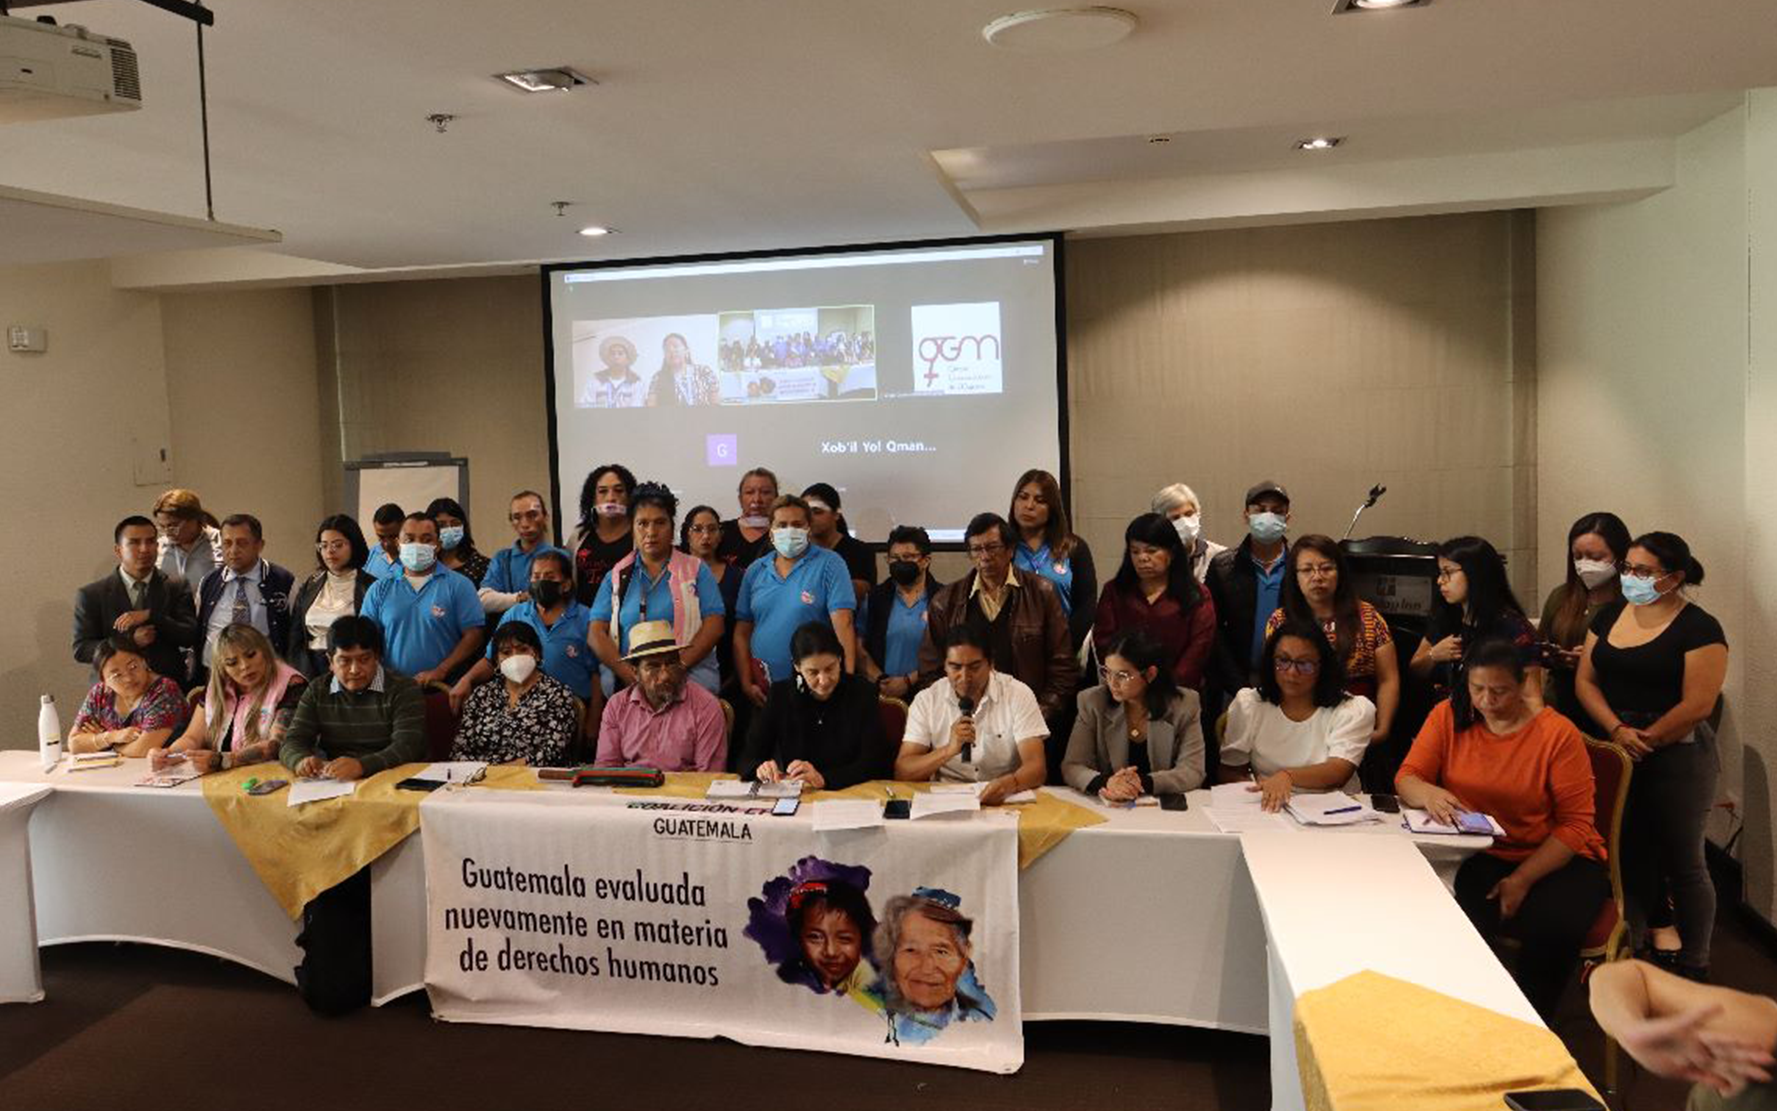 Guatemala es evaluada por el Consejo de Derechos Humanos, sobre el cumplimiento de las recomendaciones del Examen Periódico Universal en materia de derechos humanos